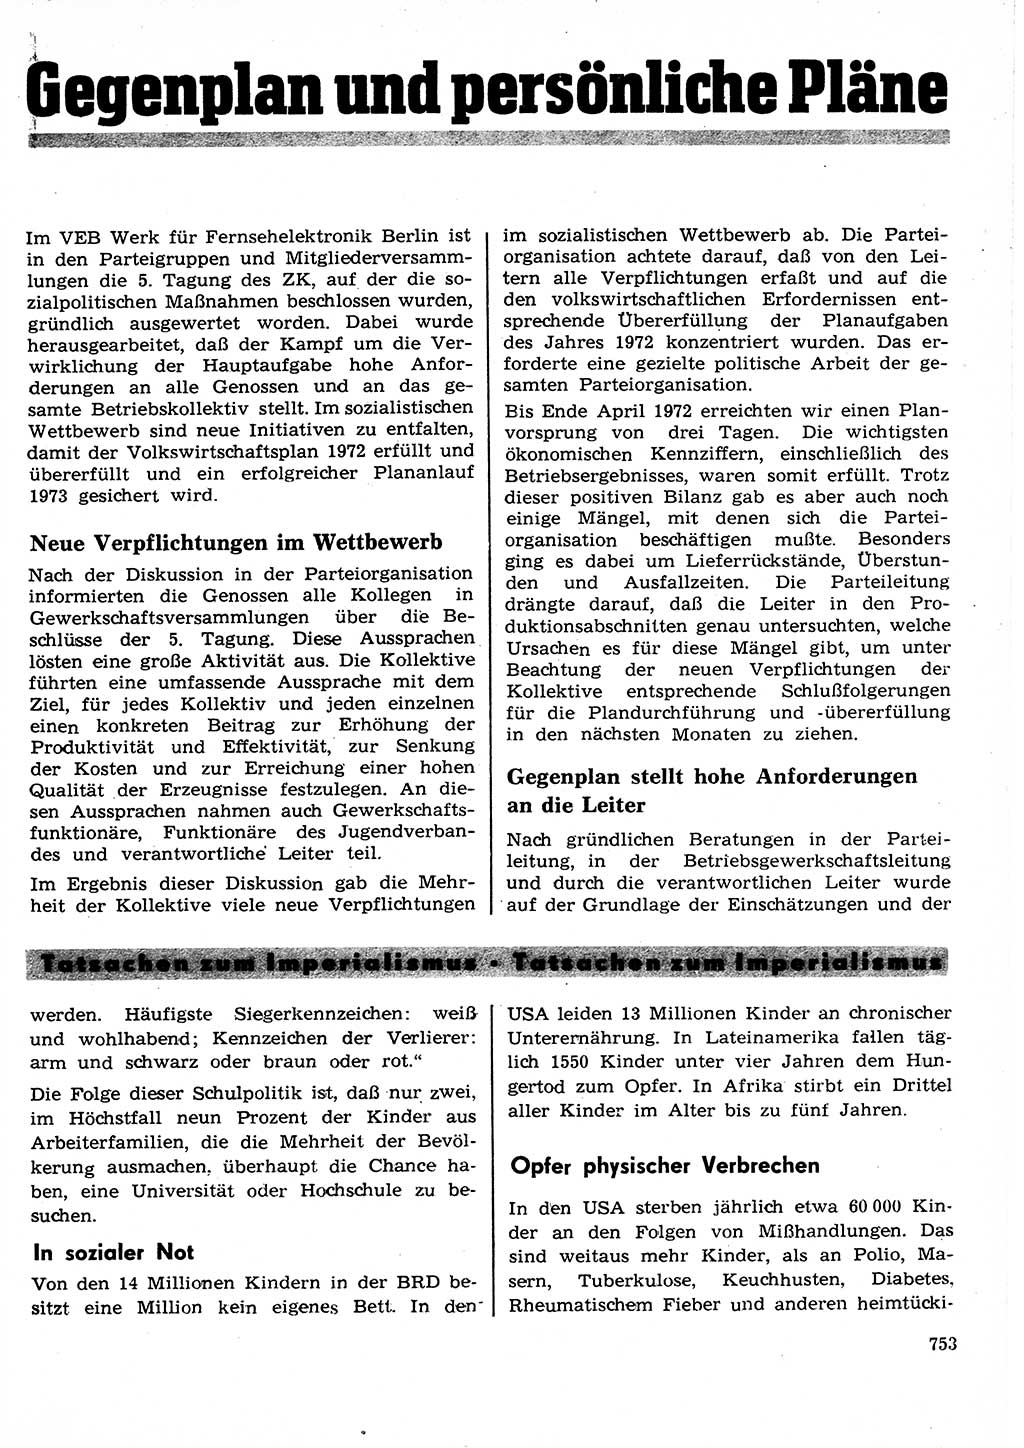 Neuer Weg (NW), Organ des Zentralkomitees (ZK) der SED (Sozialistische Einheitspartei Deutschlands) für Fragen des Parteilebens, 27. Jahrgang [Deutsche Demokratische Republik (DDR)] 1972, Seite 753 (NW ZK SED DDR 1972, S. 753)